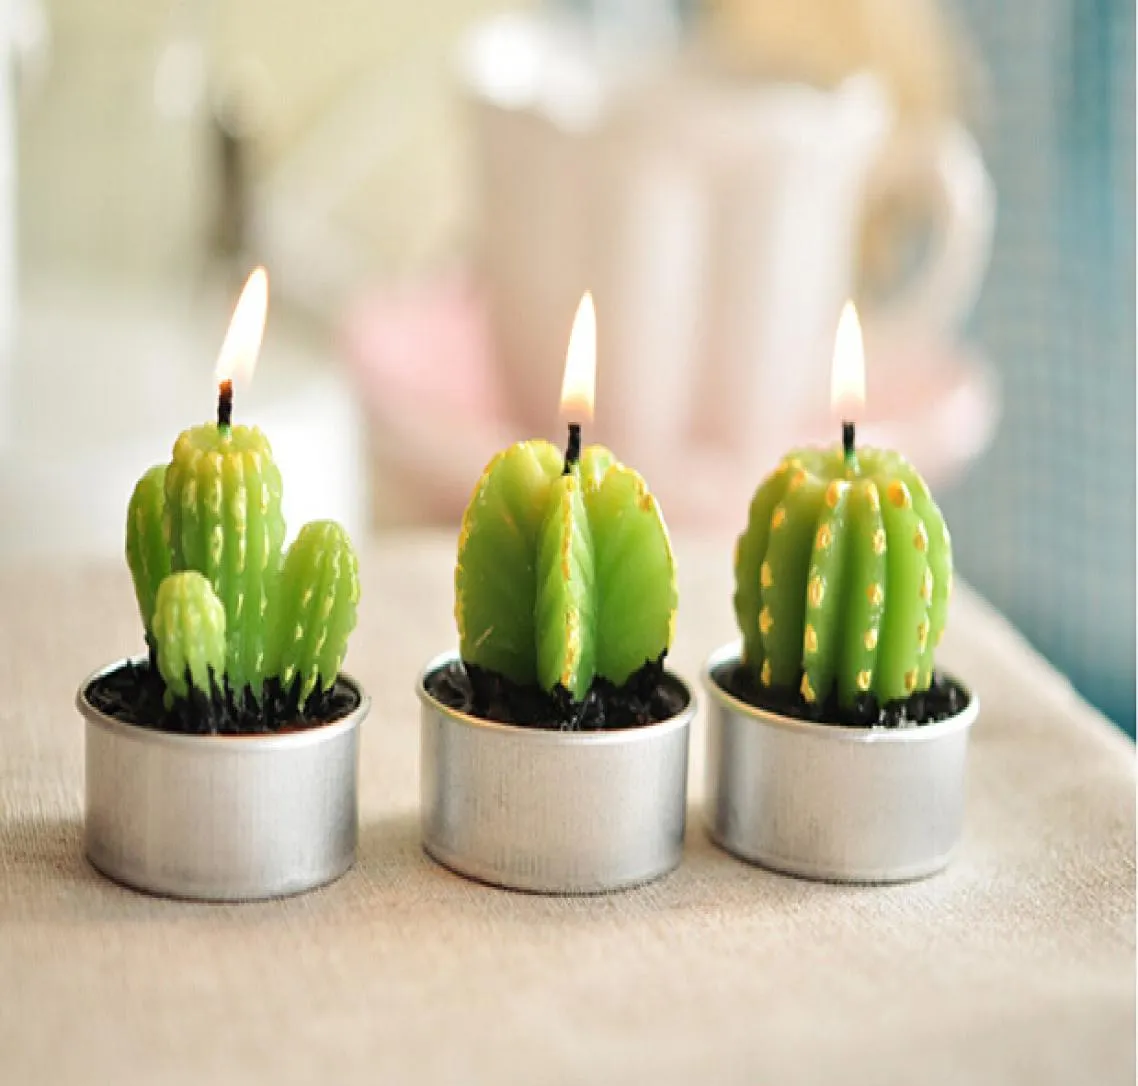 Целая редкая мини -кактусные свечи растения декор дома сад.